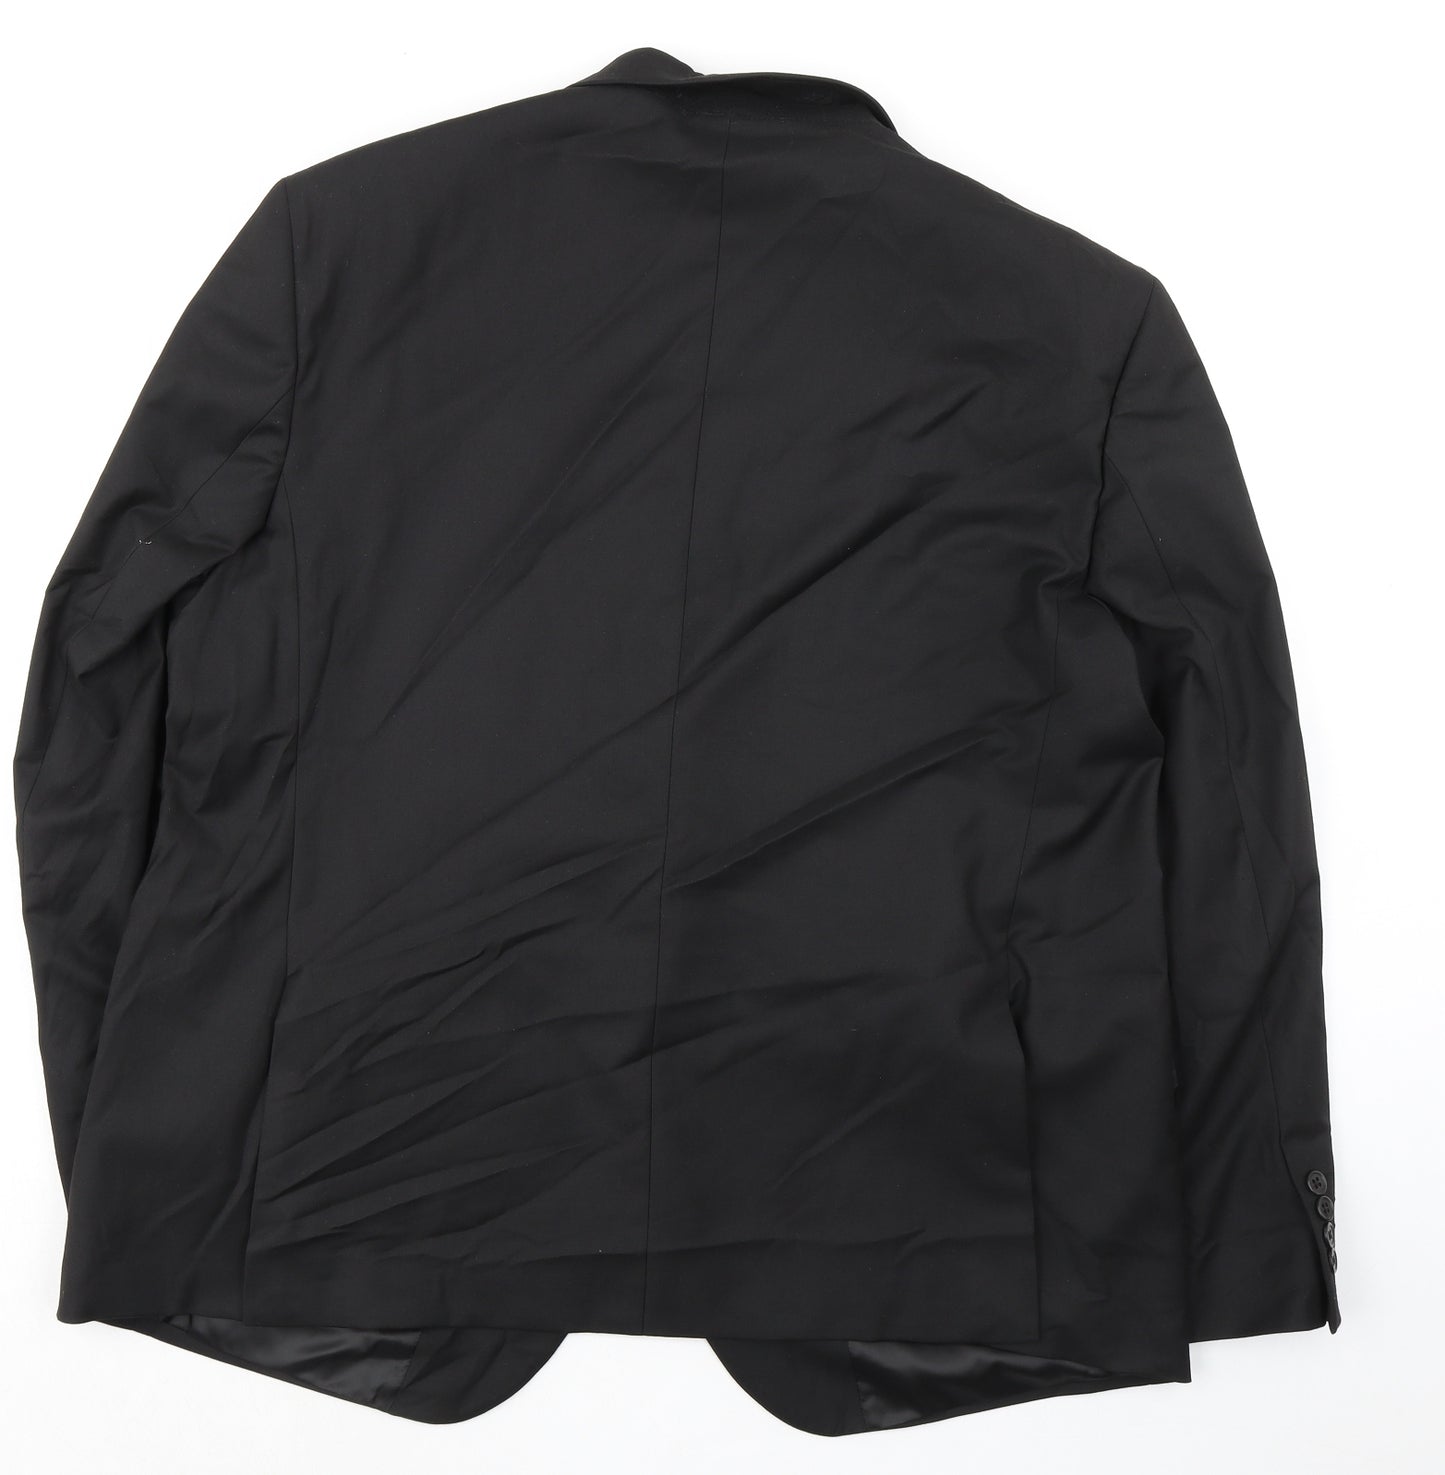 Marks and Spencer Mens Black Polyester Jacket Suit Jacket Size 48 Regular